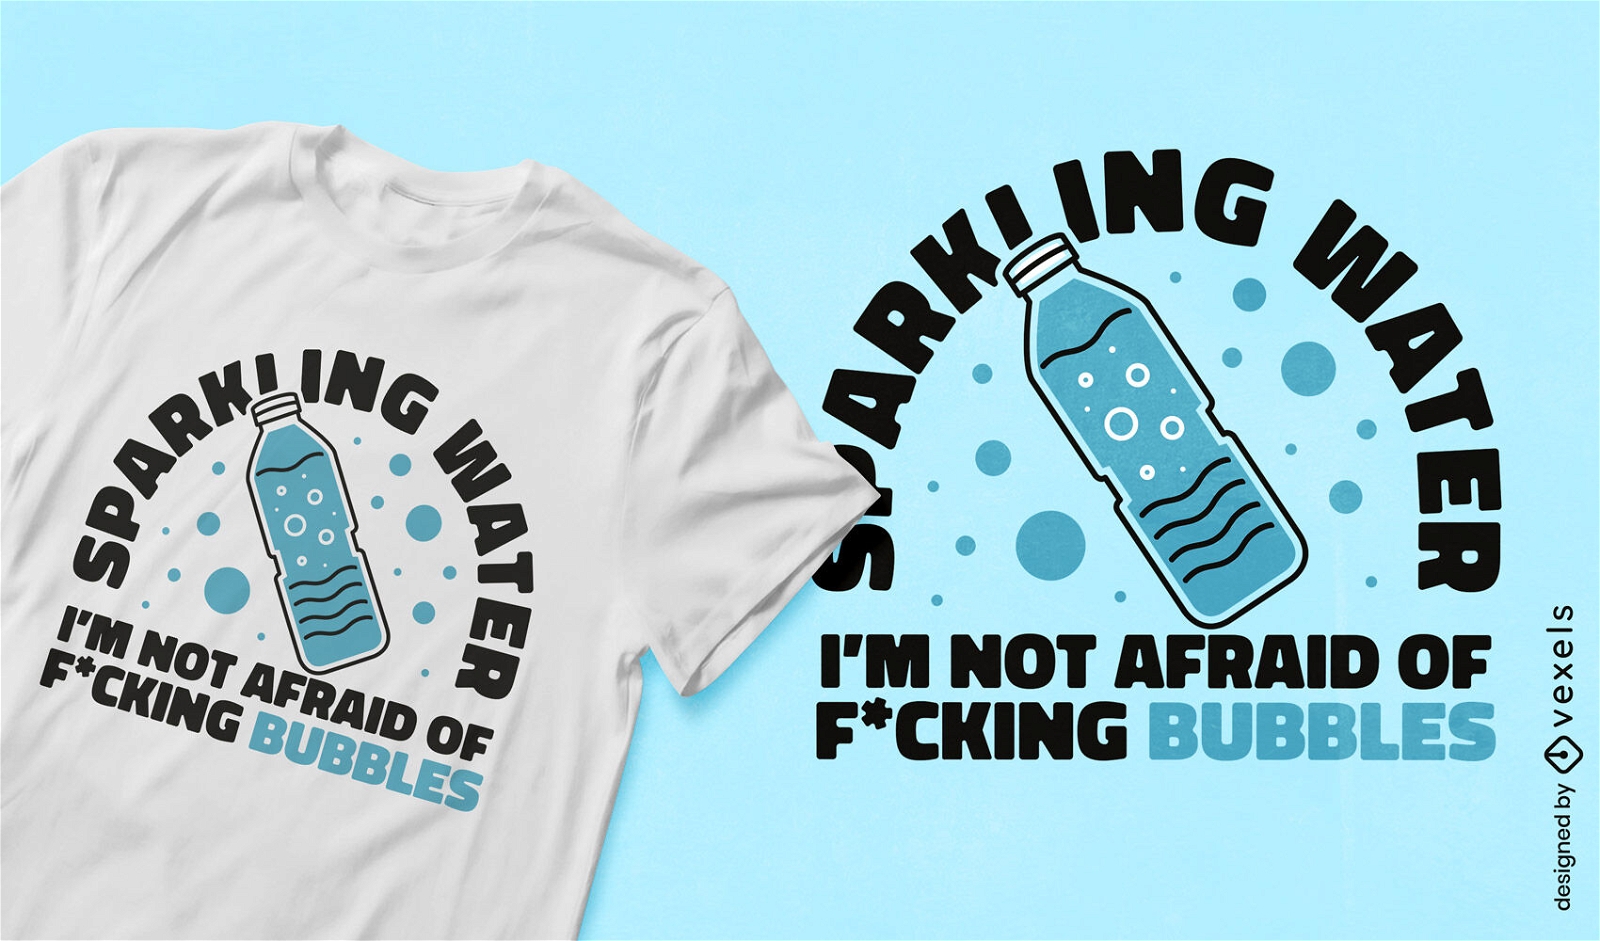 Sparklin water bottle t-shirt design